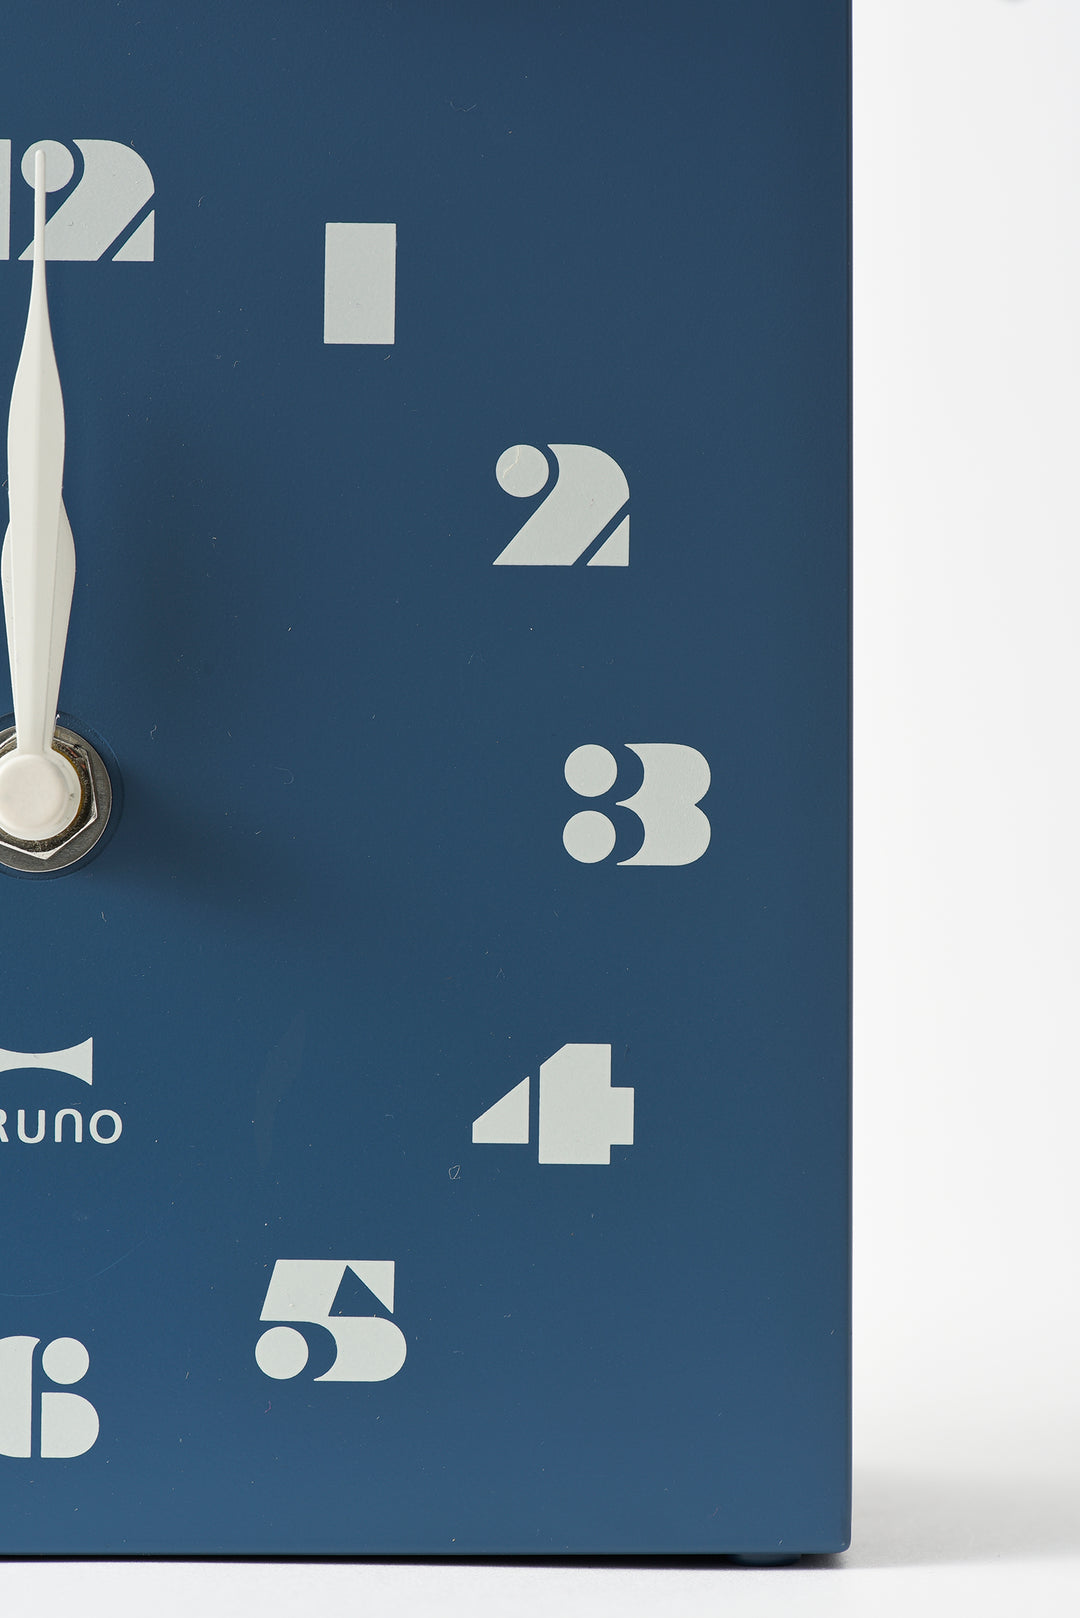 BRUNO Bird House Clock - Mint Green BCW047-MTRG